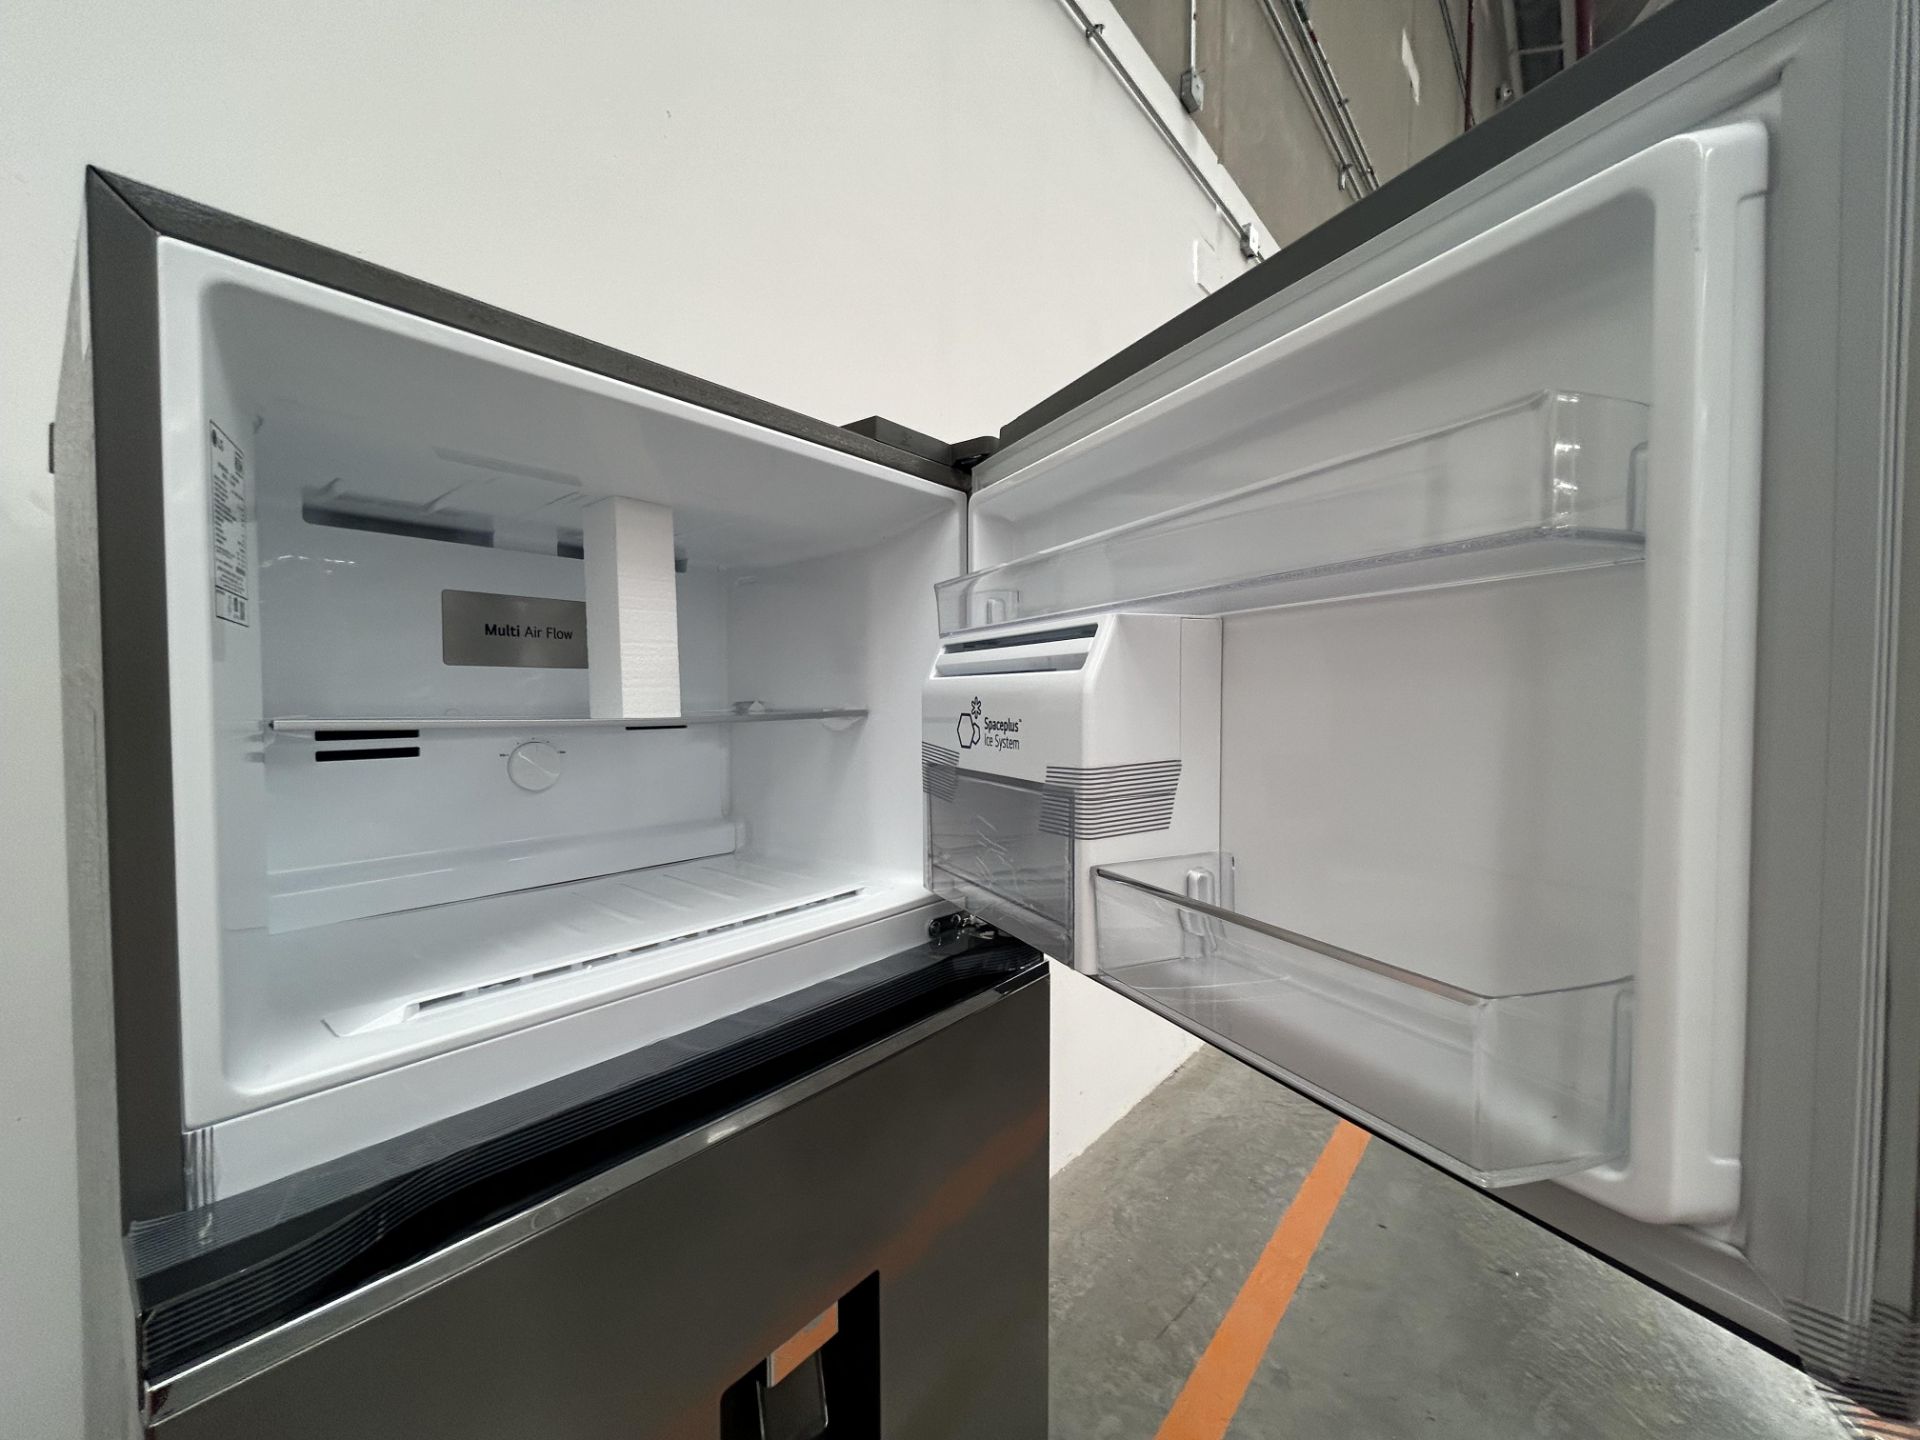 (NUEVO) Refrigerador con dispensador de agua Marca LG, Modelo VT40AWP, Serie L1S381, Color GRIS - Bild 5 aus 5